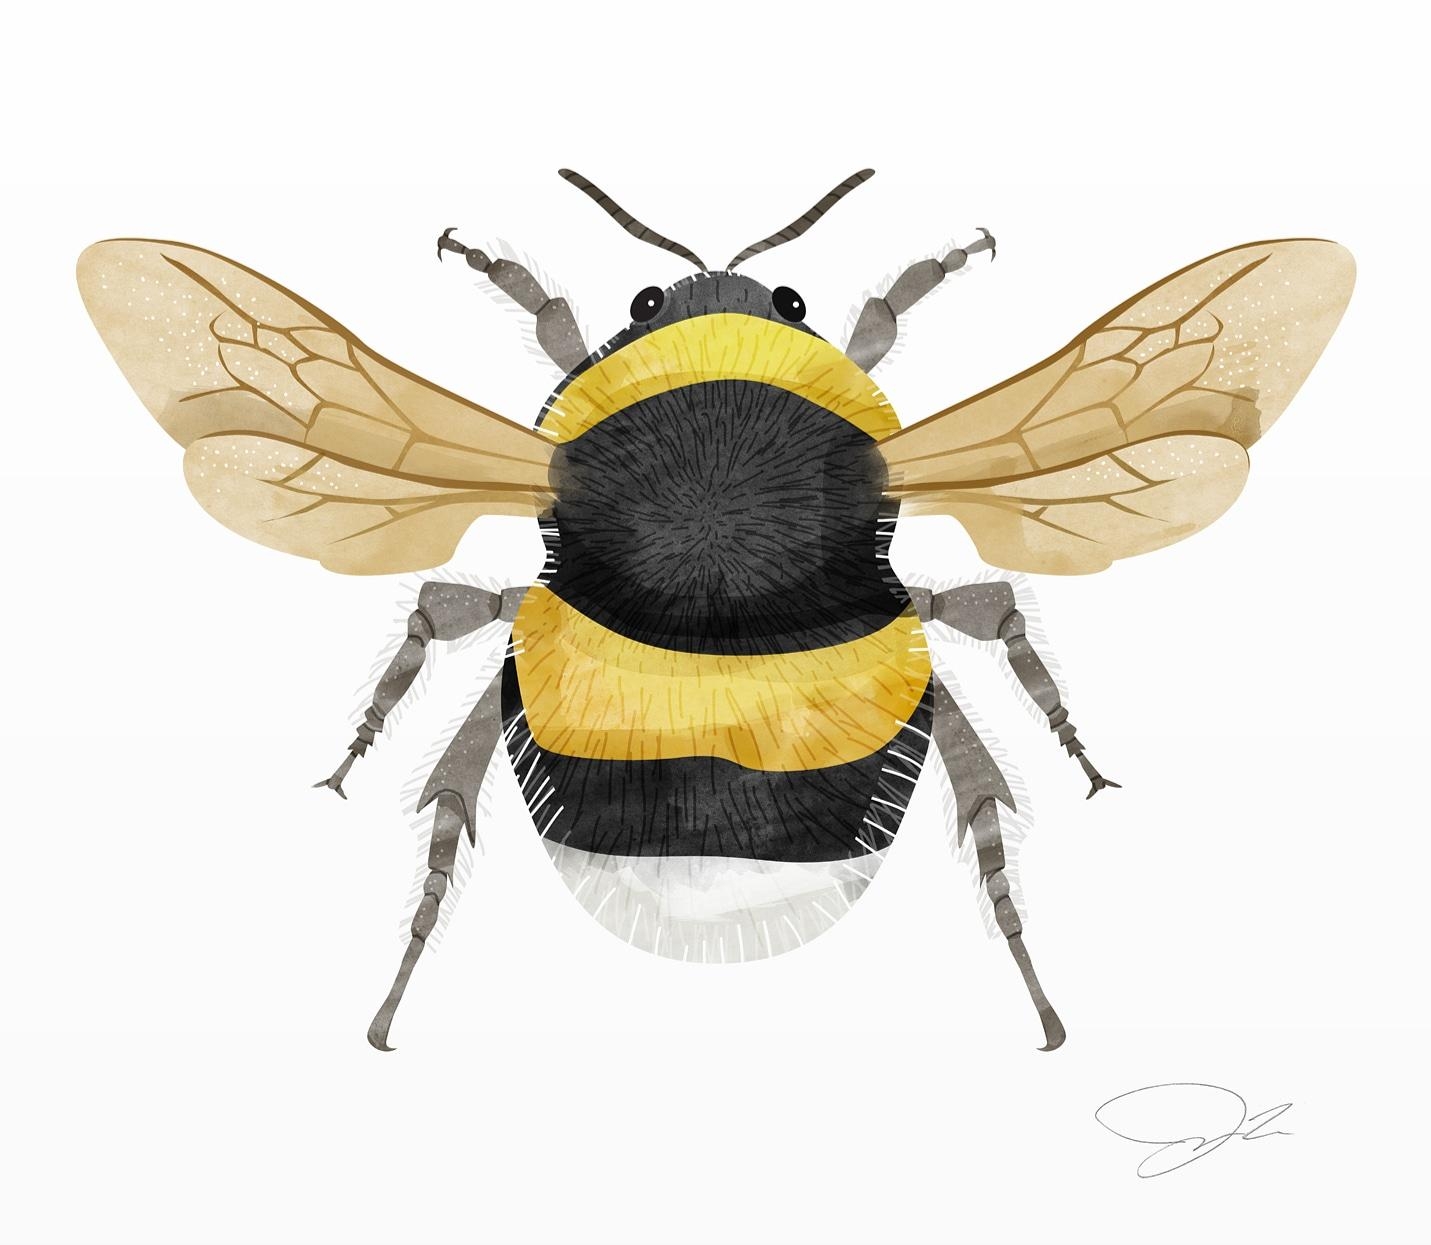 Eine Biene, die ich vor einigen Wochen illustriert habe. #illustration #drucke #prints